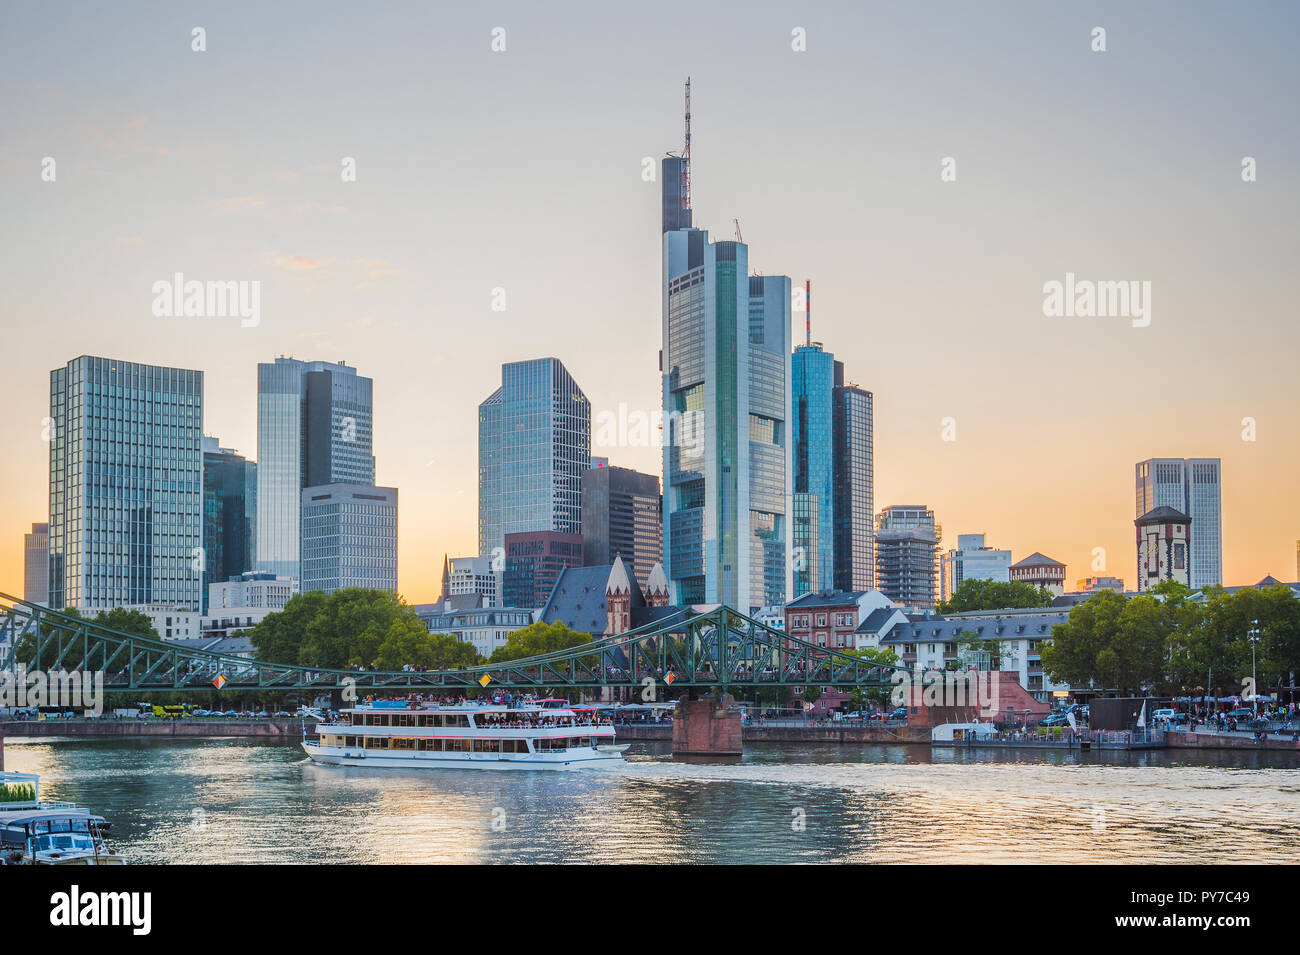 Sonnenuntergang Himmel über Stadt Damm, touristischen Boote und Brücke von Frankfurt am Main Skyline mit moderner Architektur, Deutschland Stockfoto